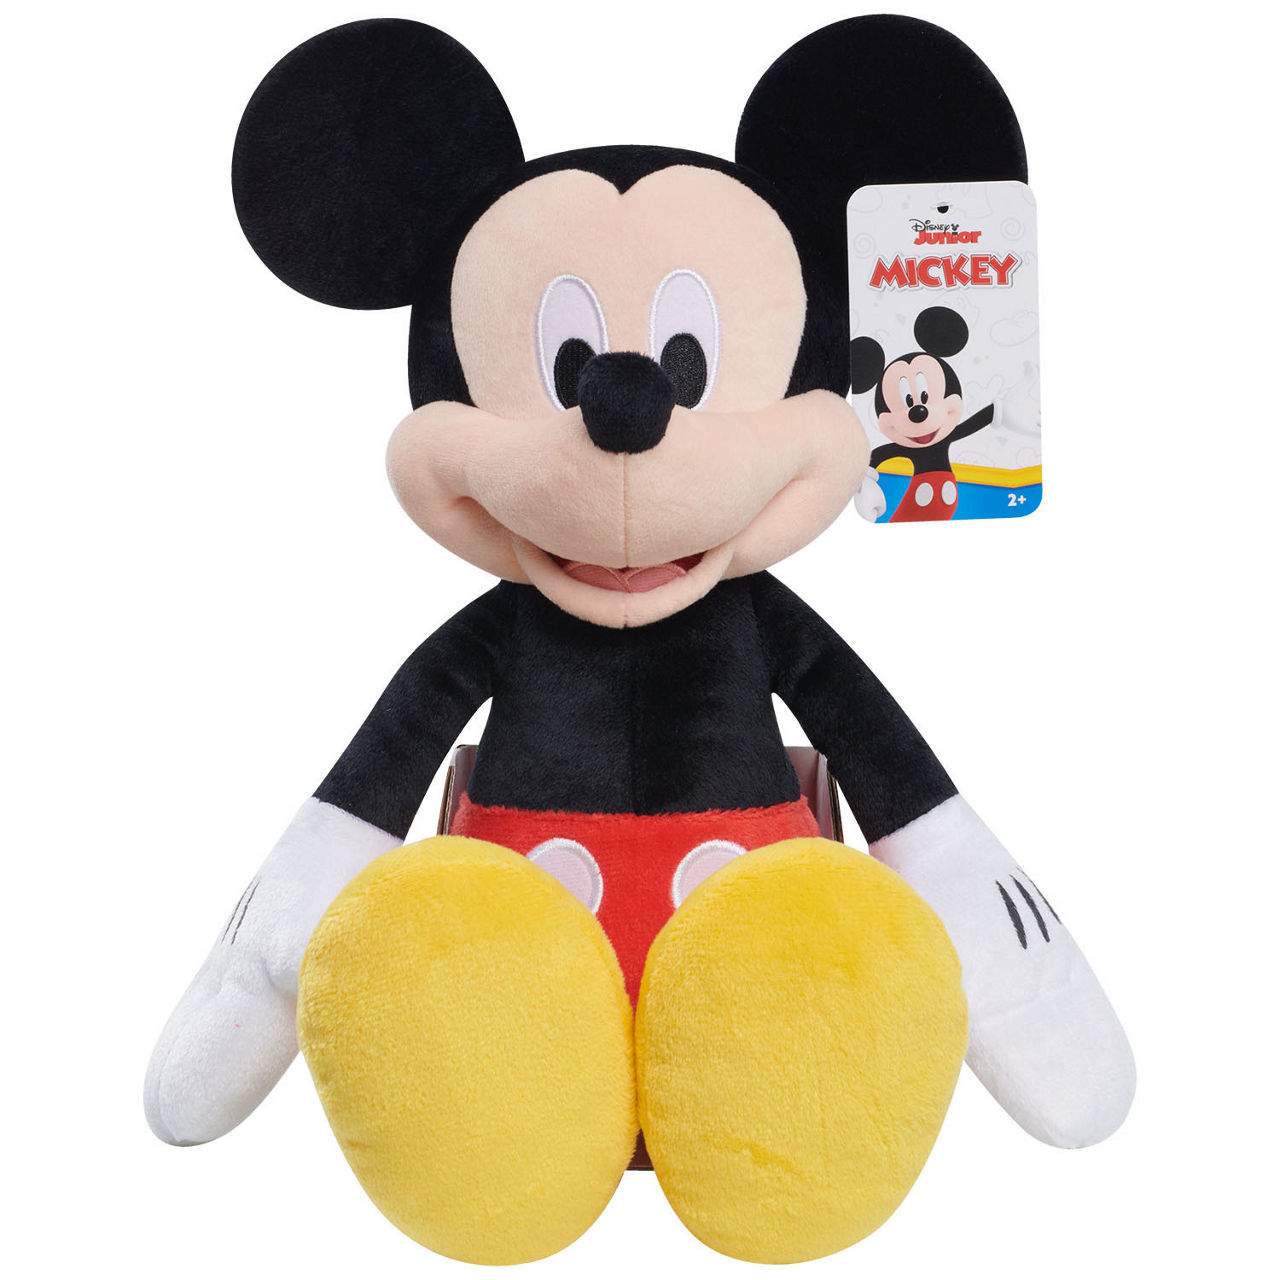 Disney Disney Junior Medium Mickey Plush